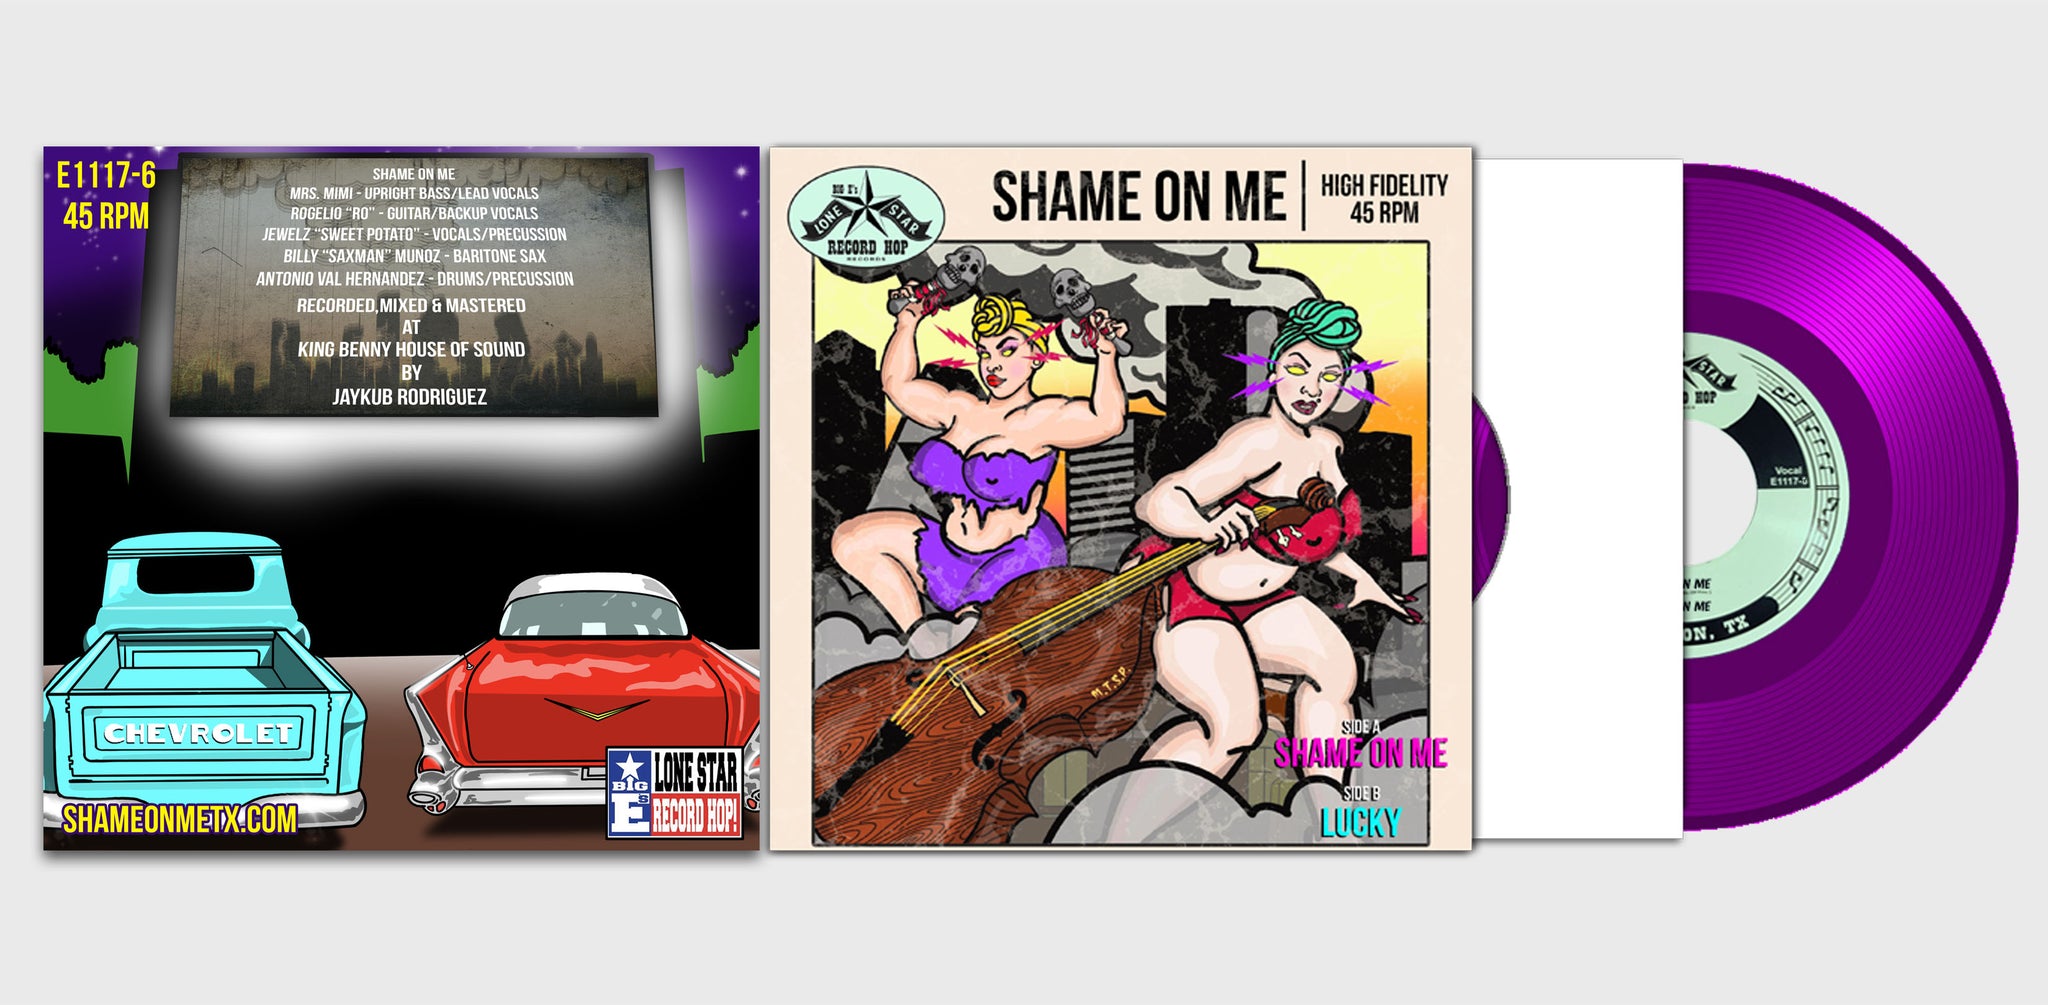 Shame On Me/Lucky Vinyl, 7", 45 RPM